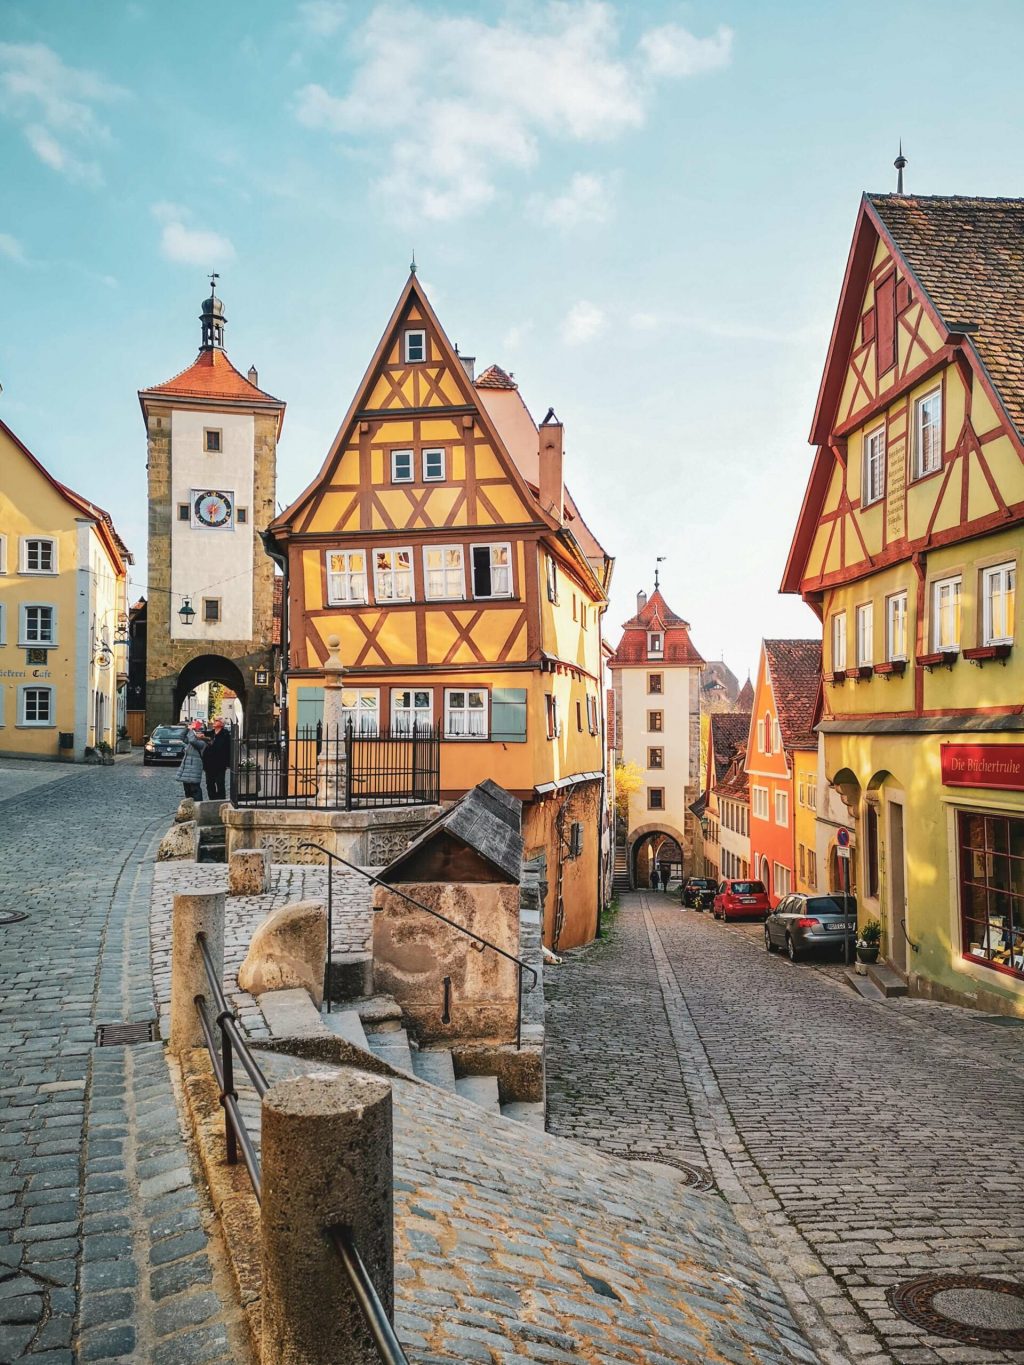 Das Ploenlein in Rothenburg ob der Tauber mit Stadttor und Fachwerkhaeusern